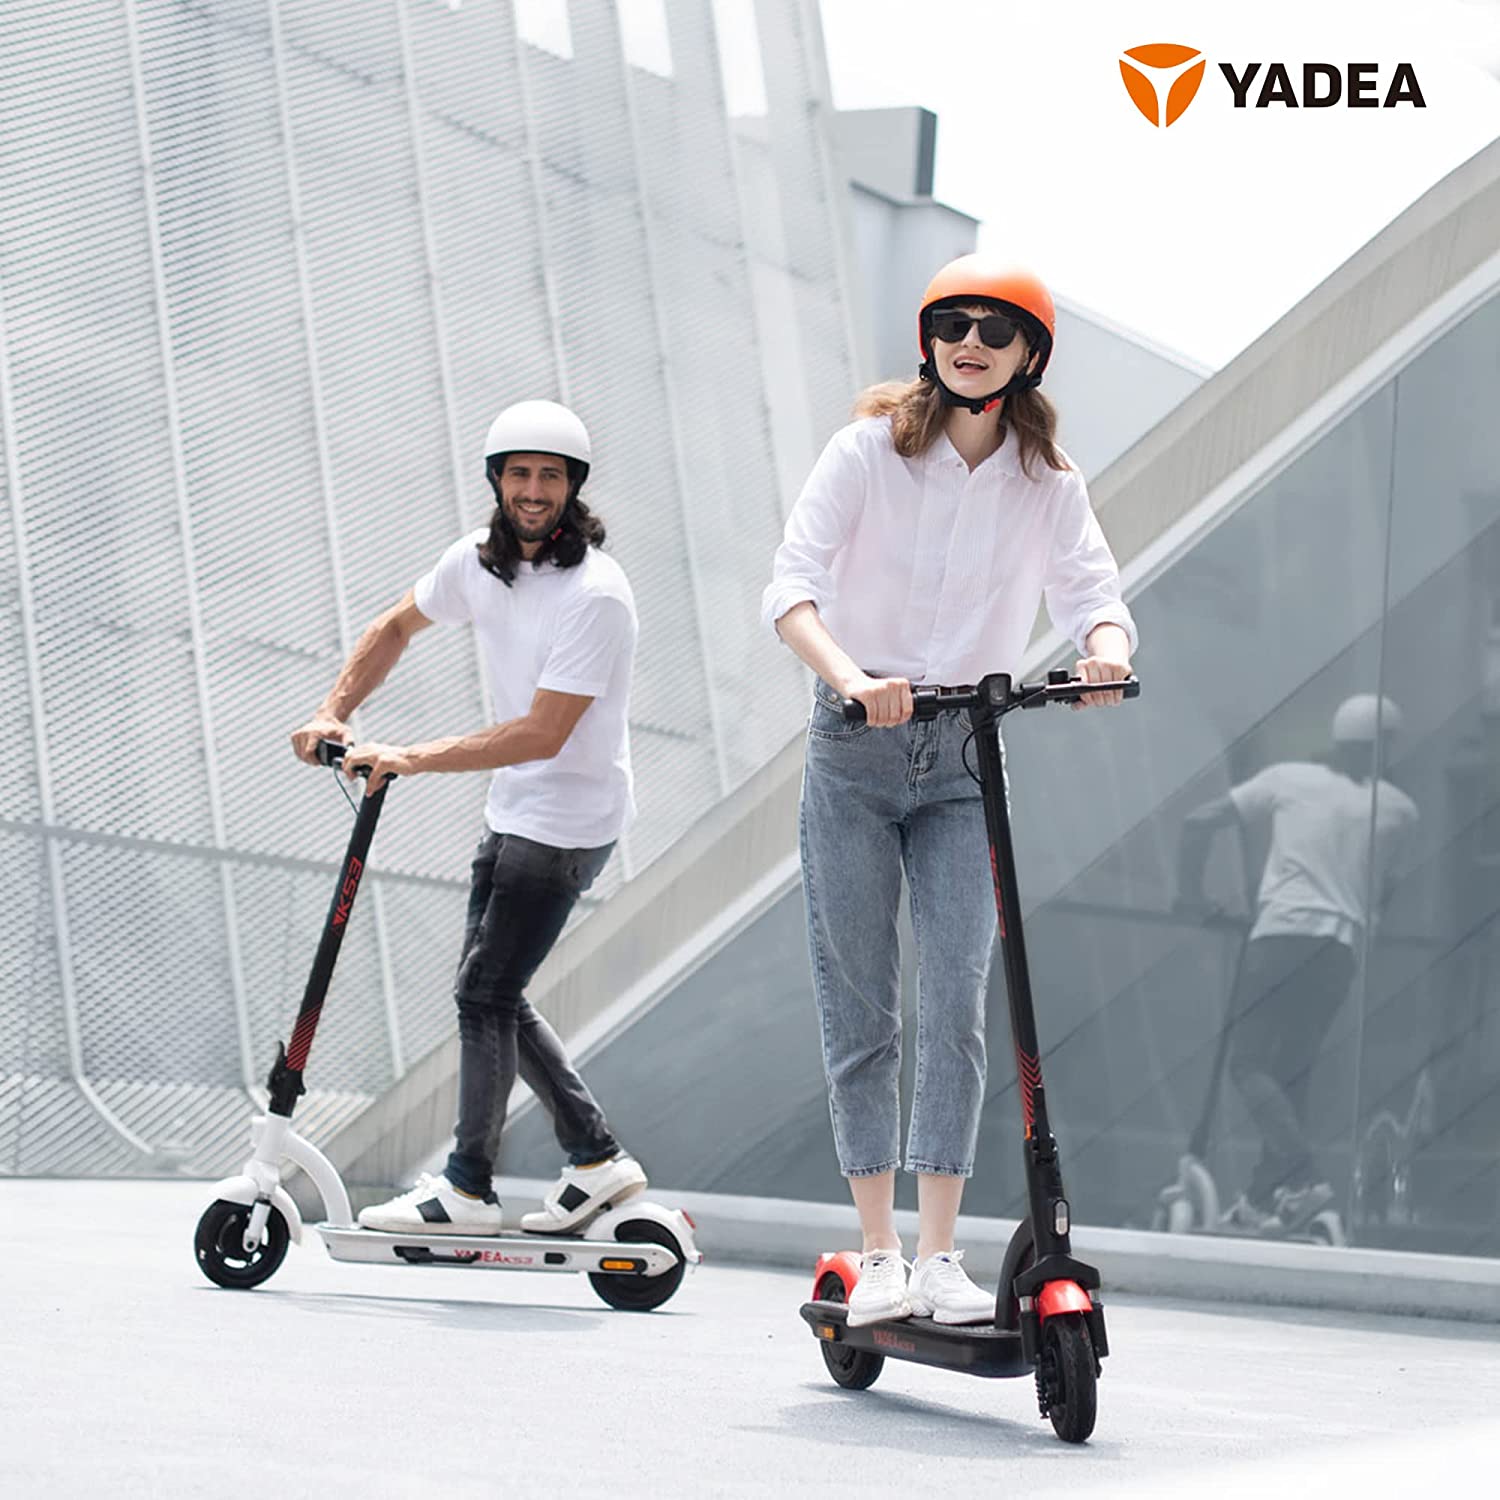 Yadea KS3 e-scooter - 36V 7.8AH / Rated Power 300W - Max Power 600W / Max Speed: 25km/h / Max Range: - YADEA 2.35.69.00.001